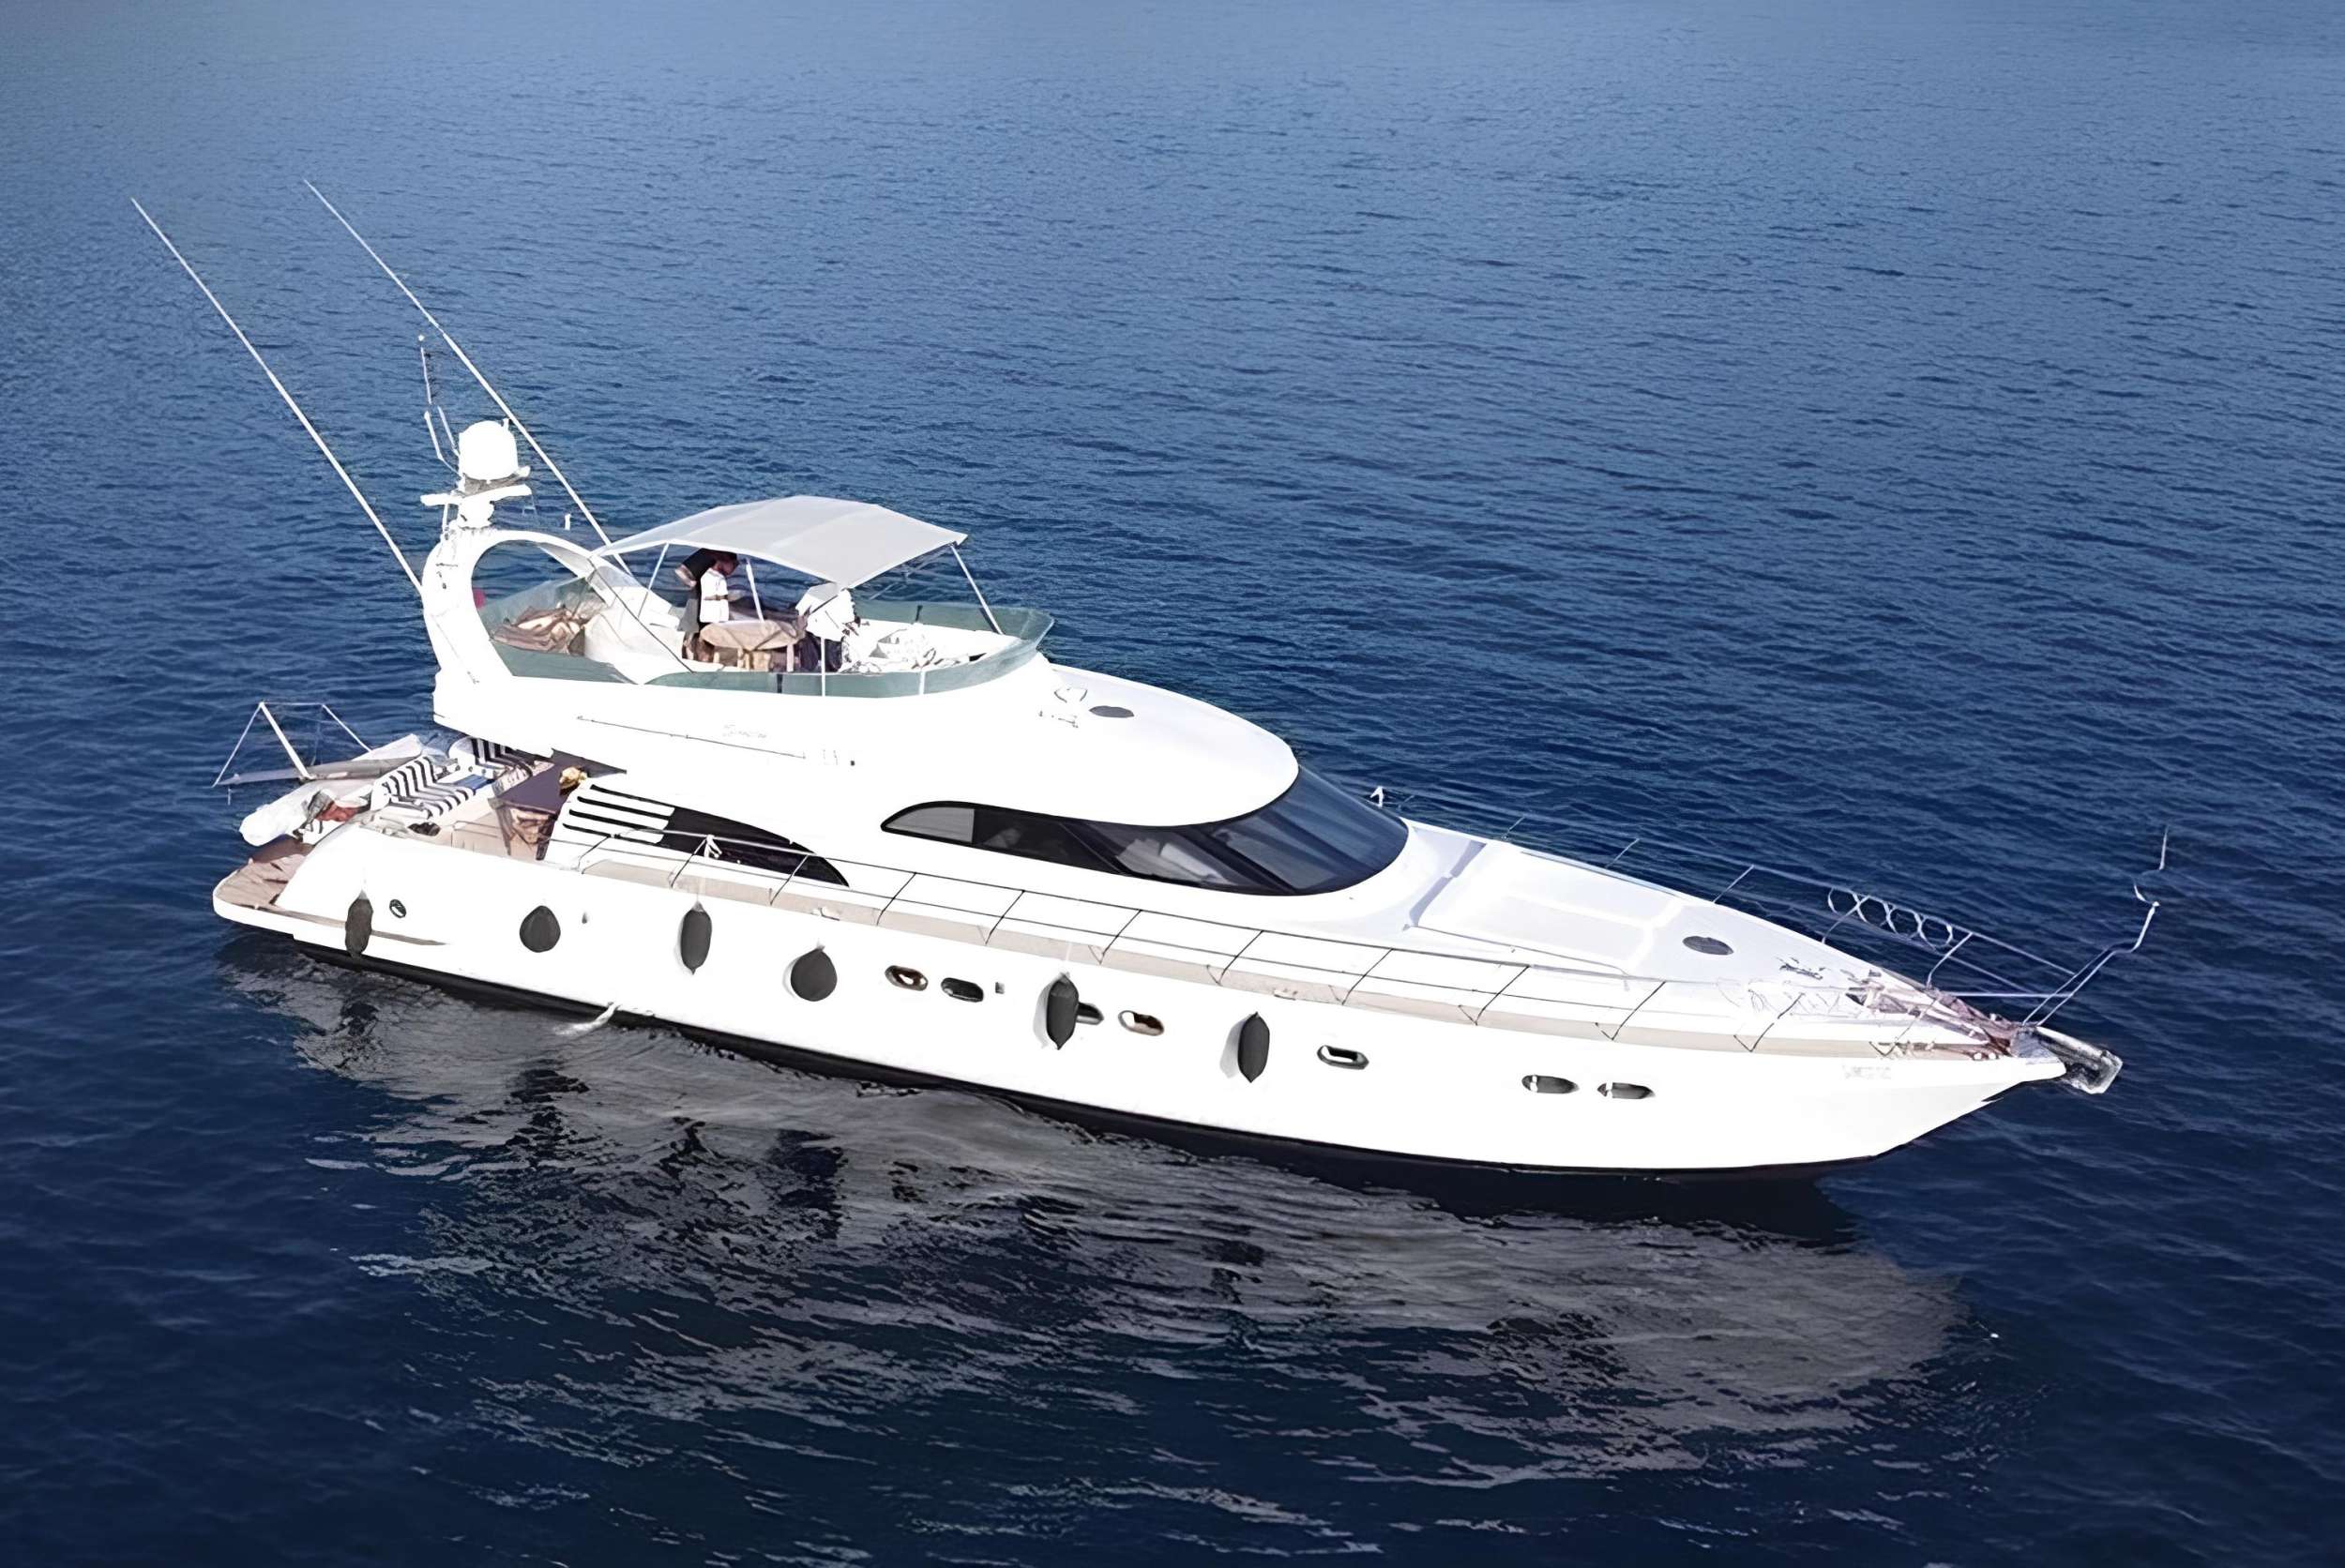 SIROCCO - Yacht Charter Göcek & Boat hire in Turkey 1